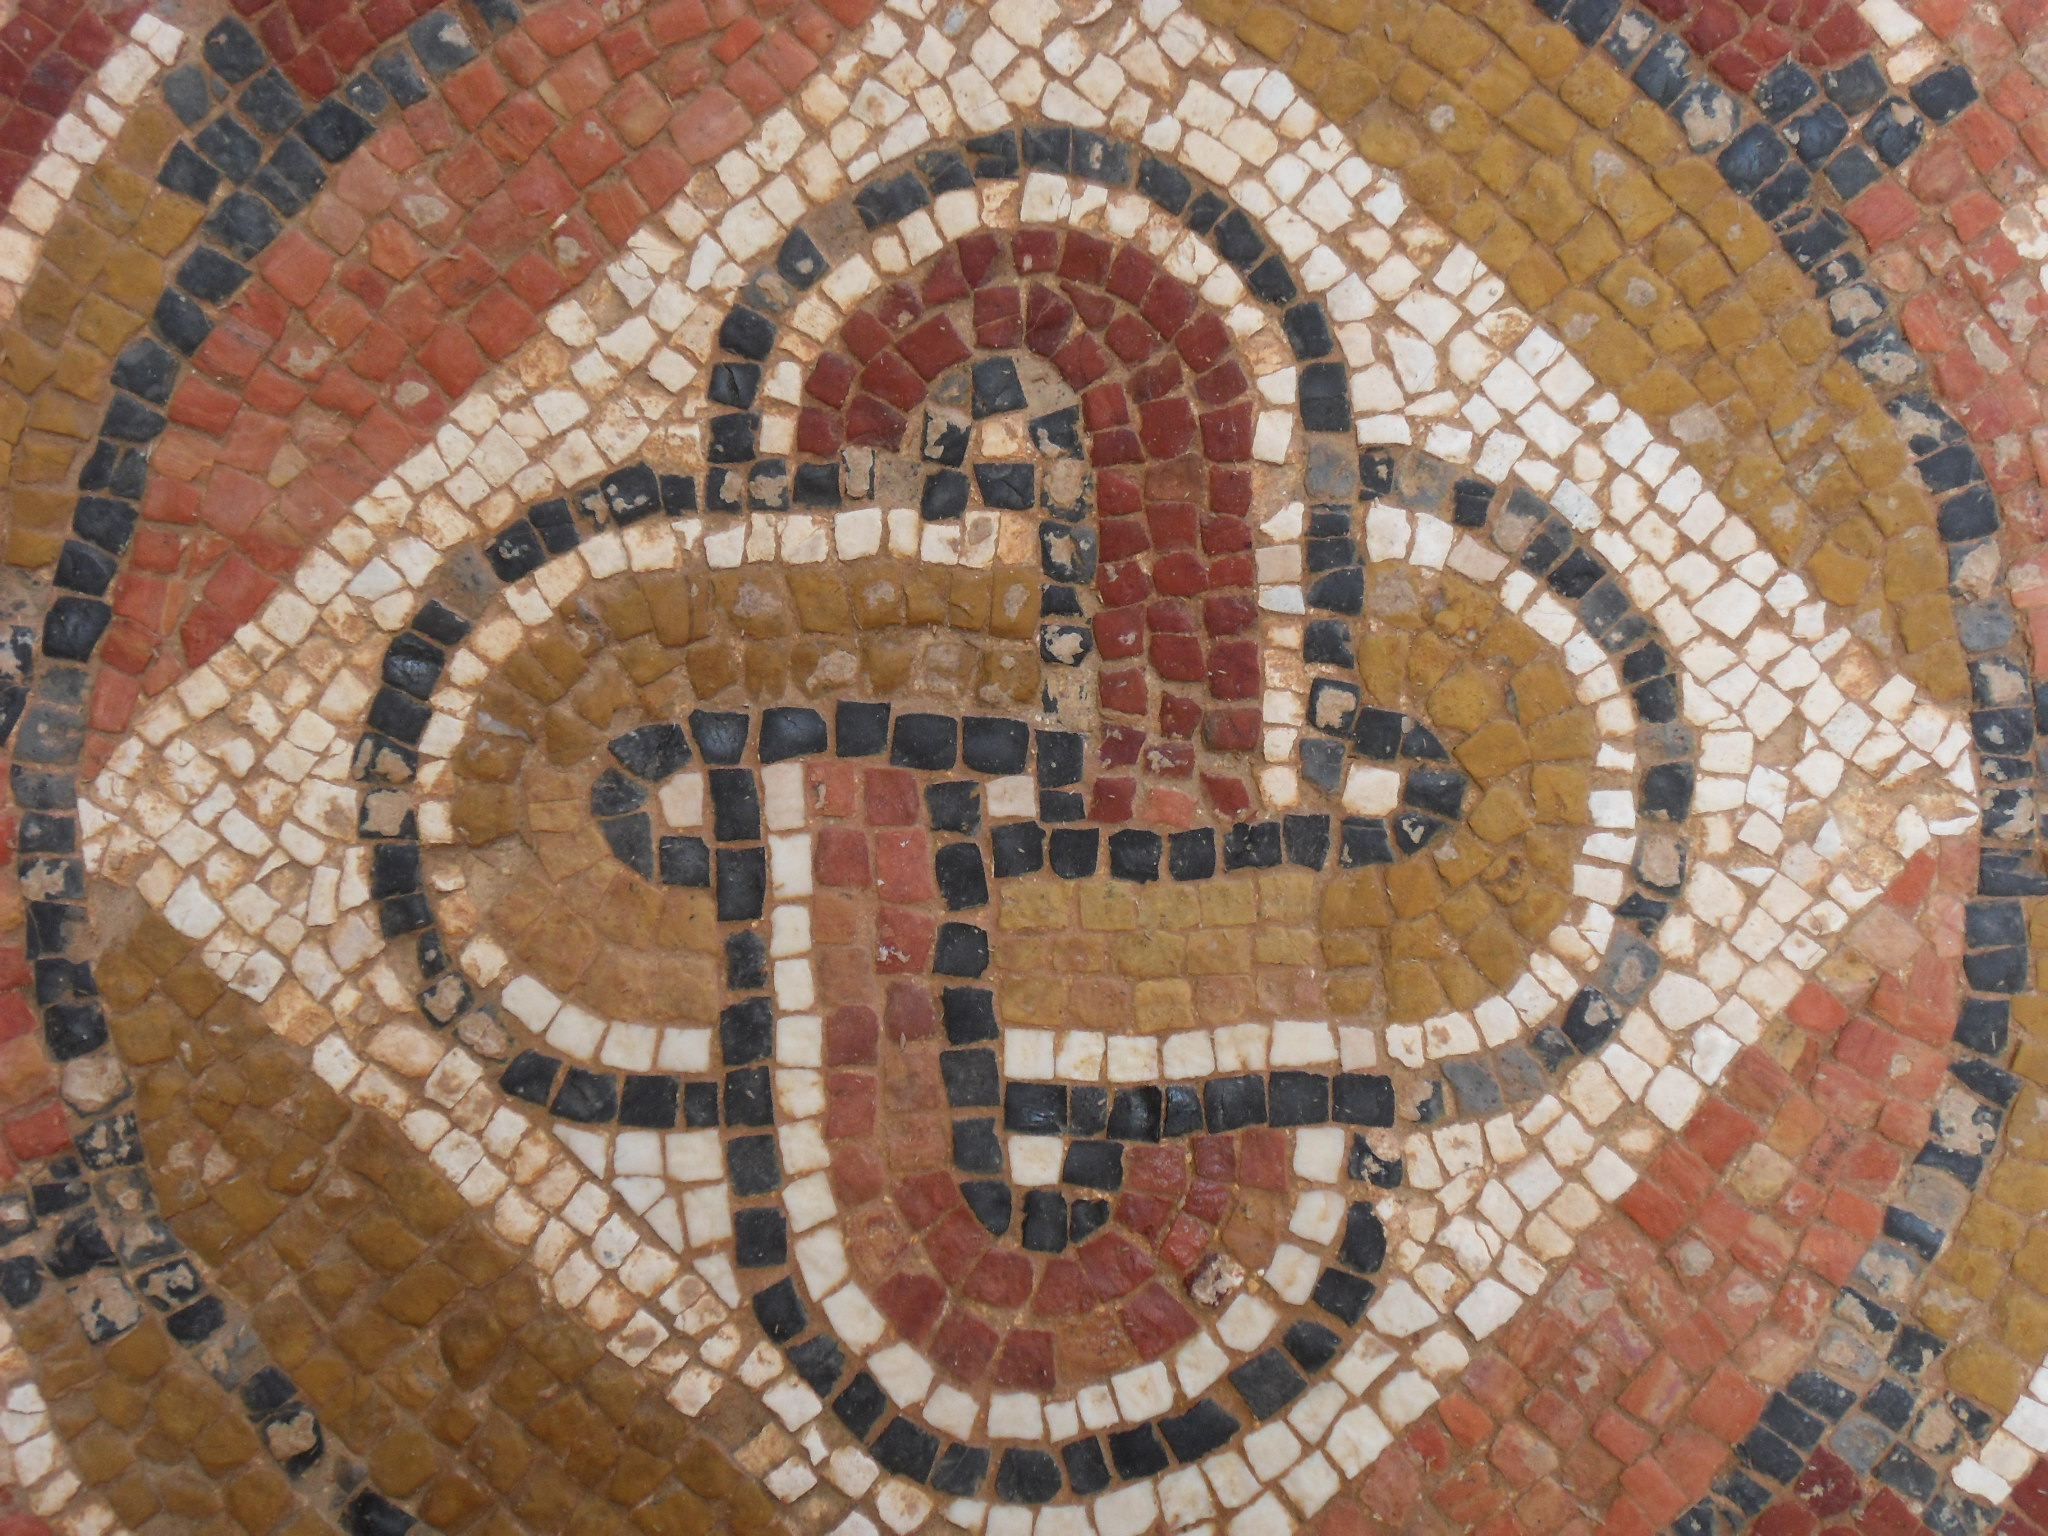 Detalle de mosaicos: nudo de Salomón